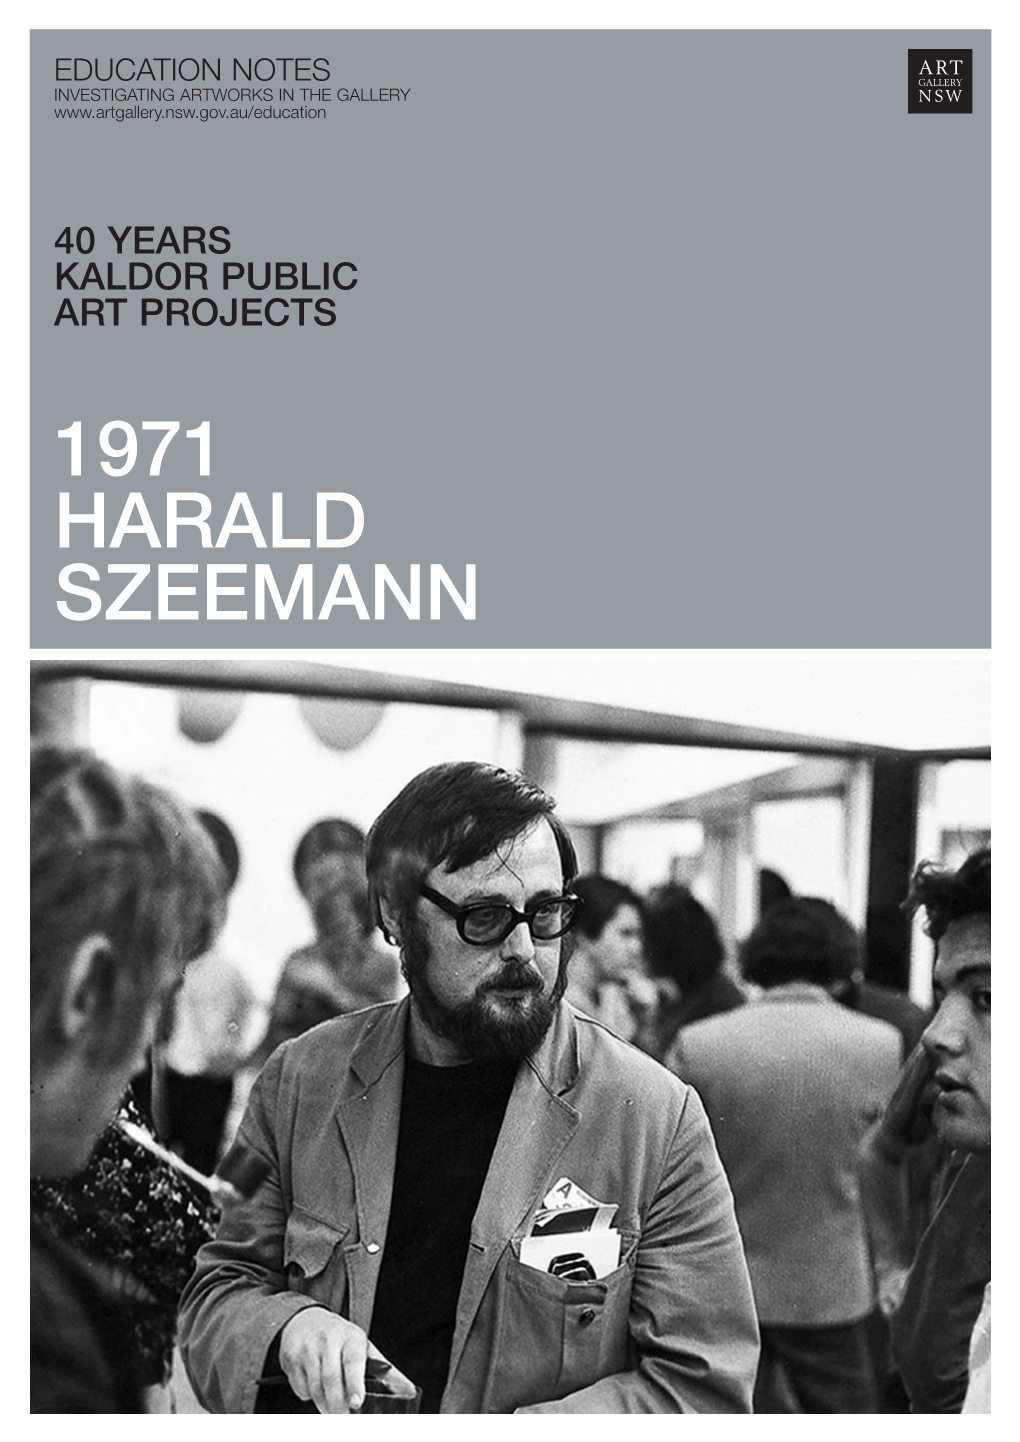 1971 HARALD SZEEMANN 1971 Harald Szeemann